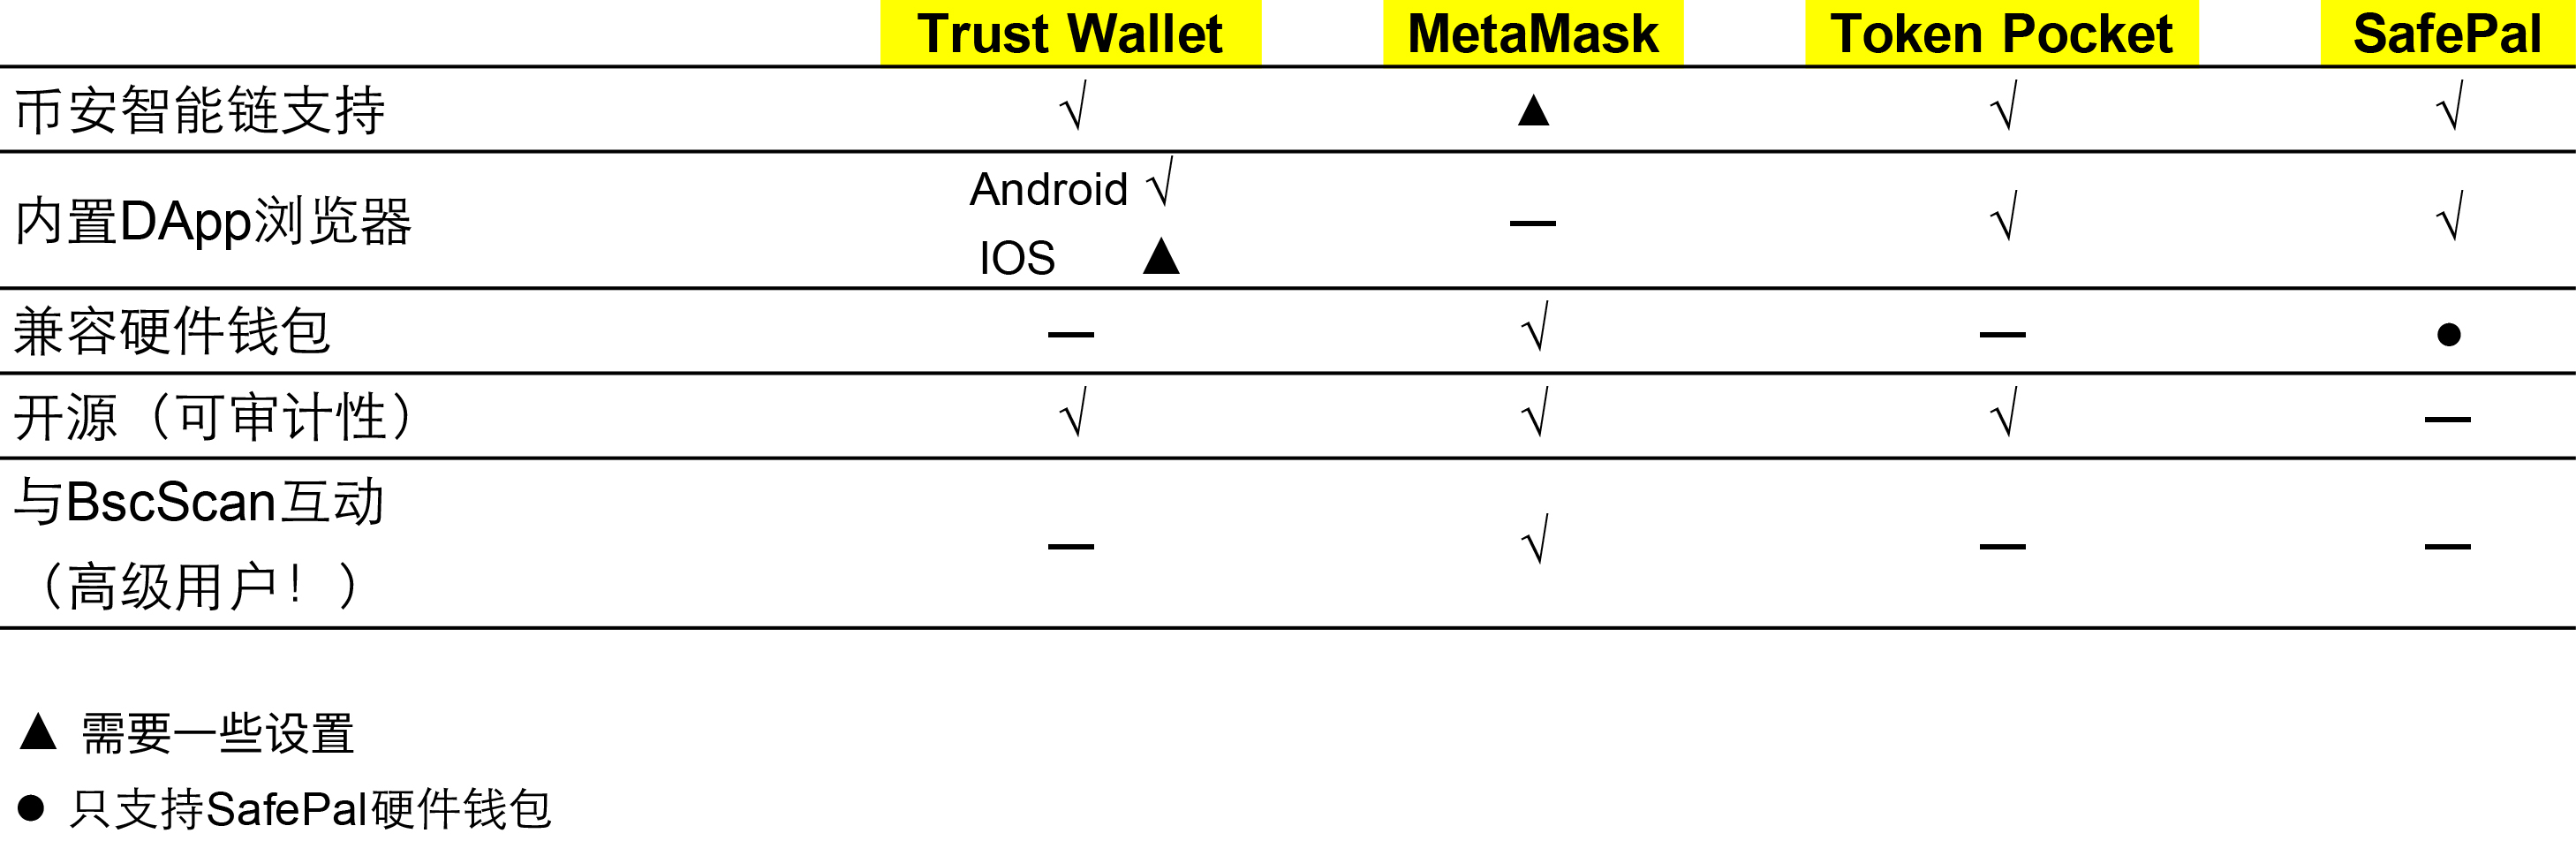 Wallets Compare: Mobile